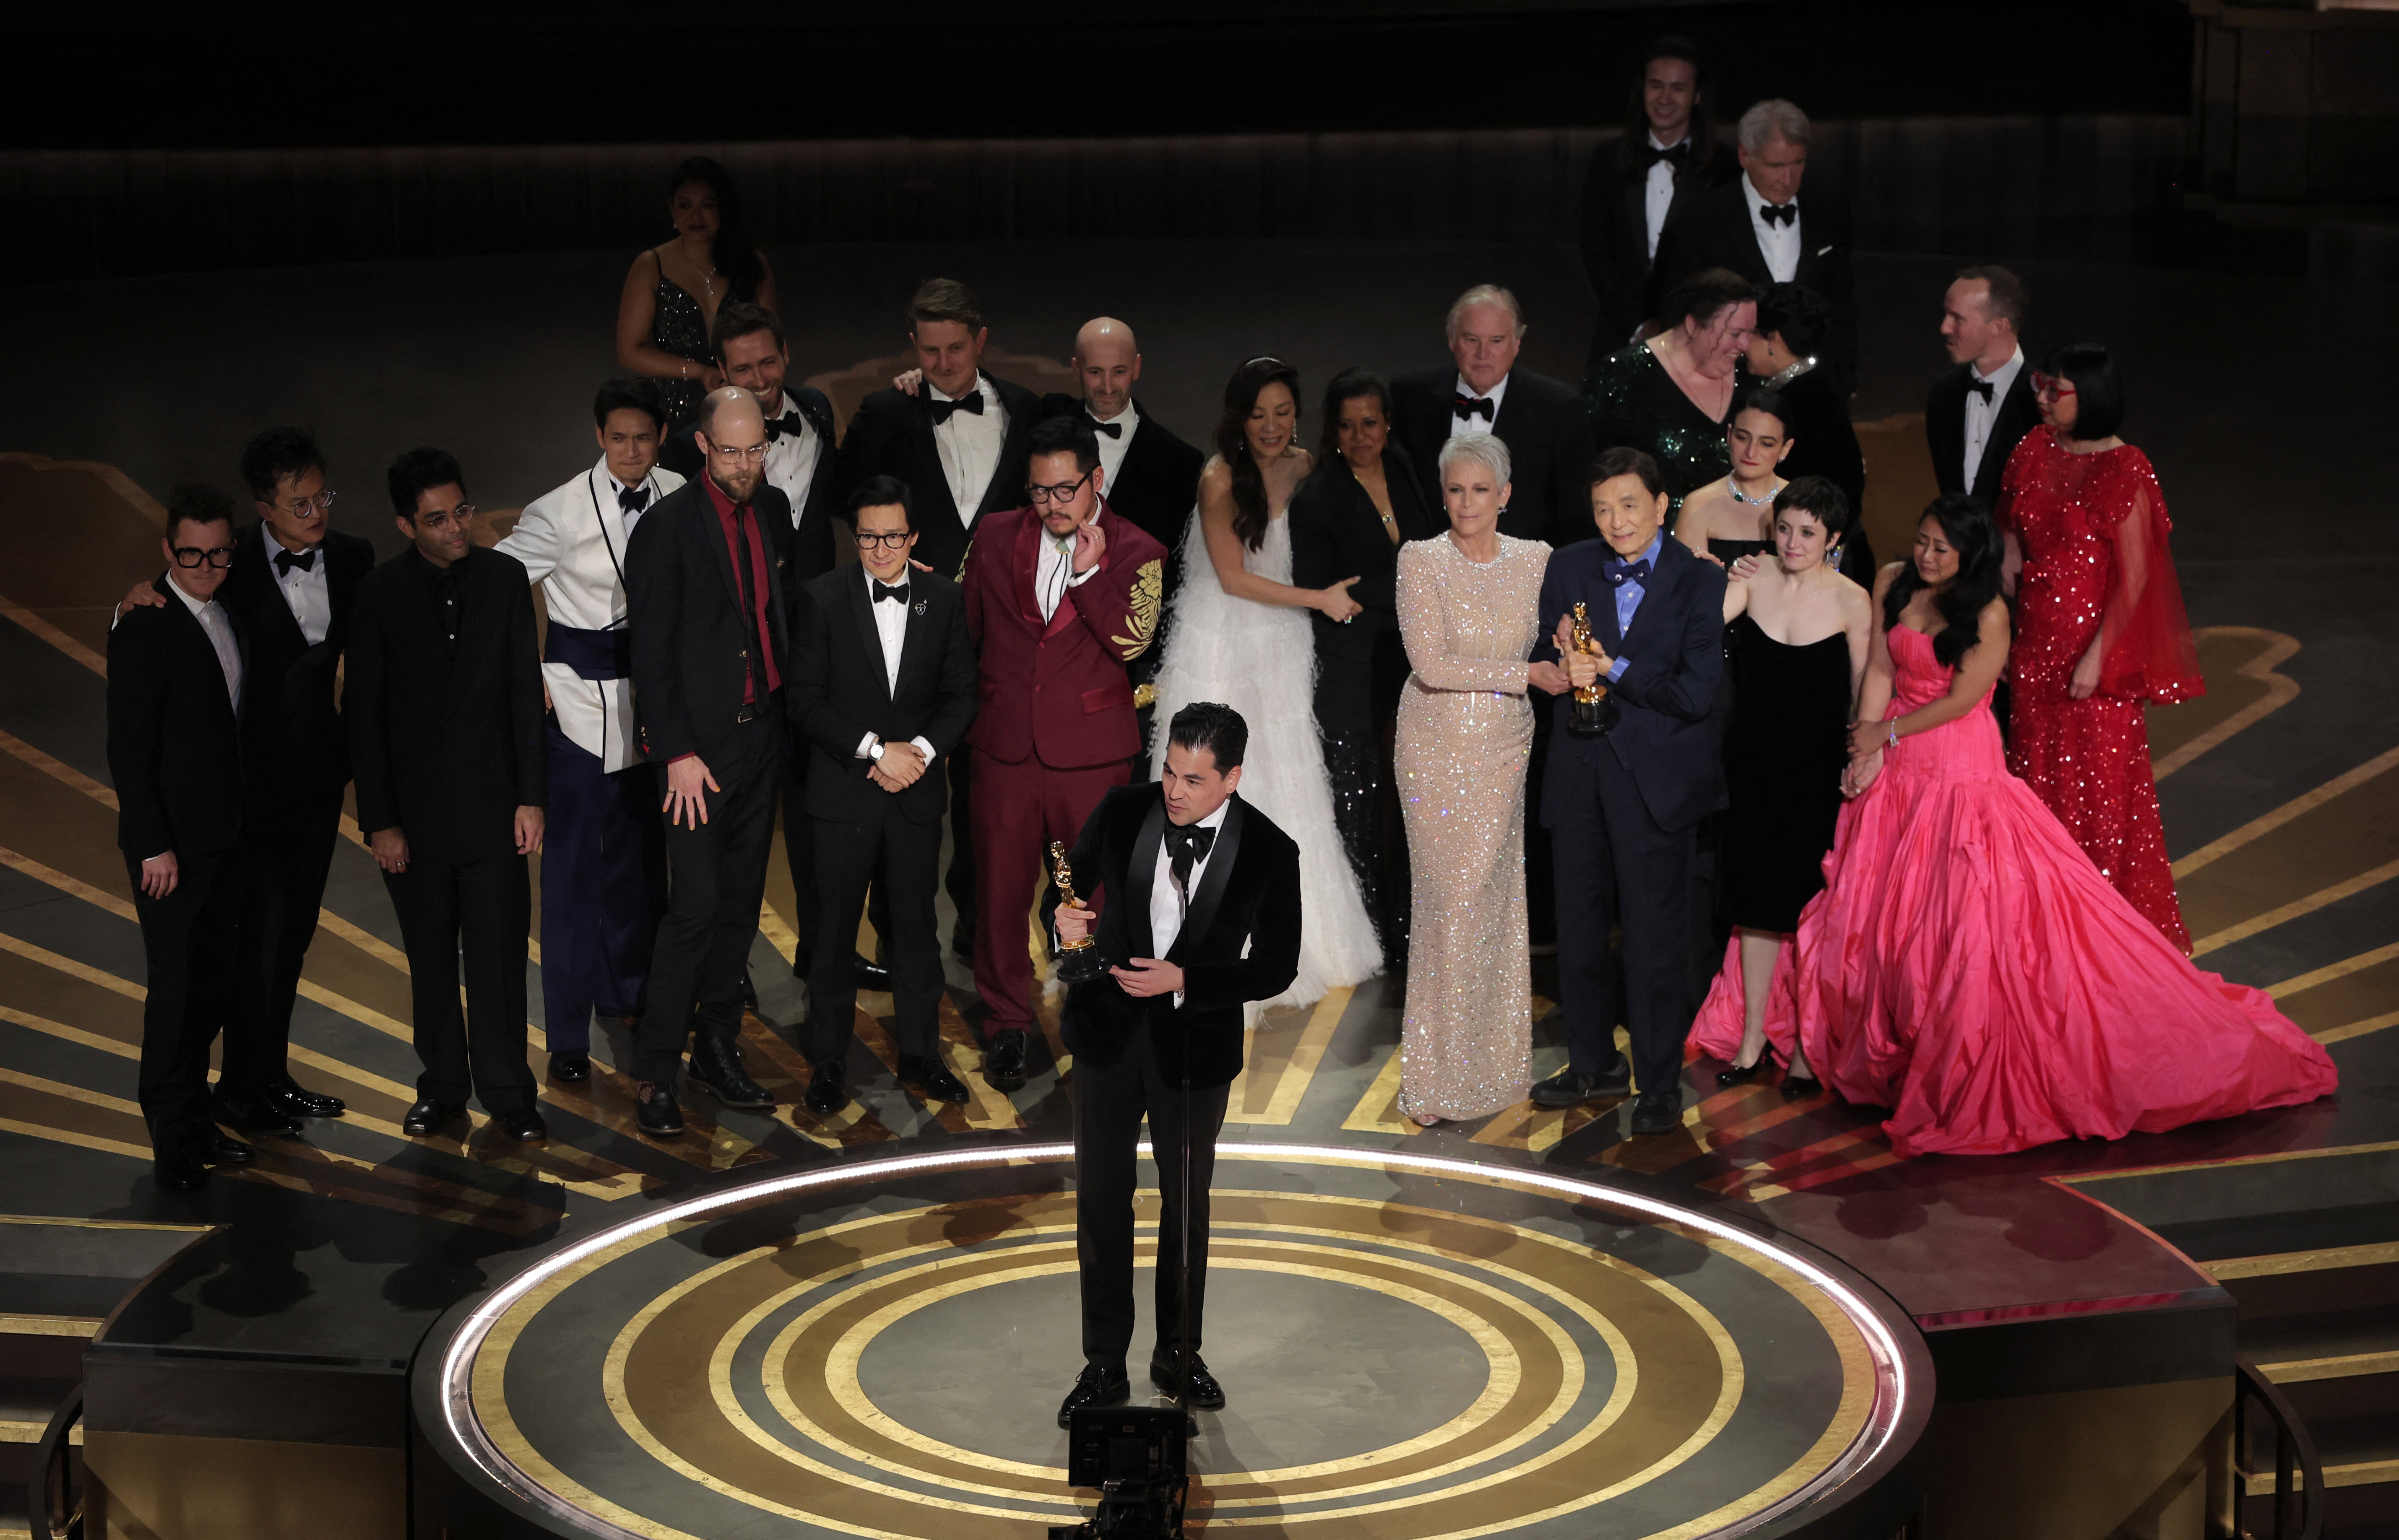 Daniel Kwan, Daniel Scheinert y Jonathan Wang ganaron el Oscar a Mejor Película con Everything Everywhere All at Once, su título original (REUTERS/Carlos Barria)